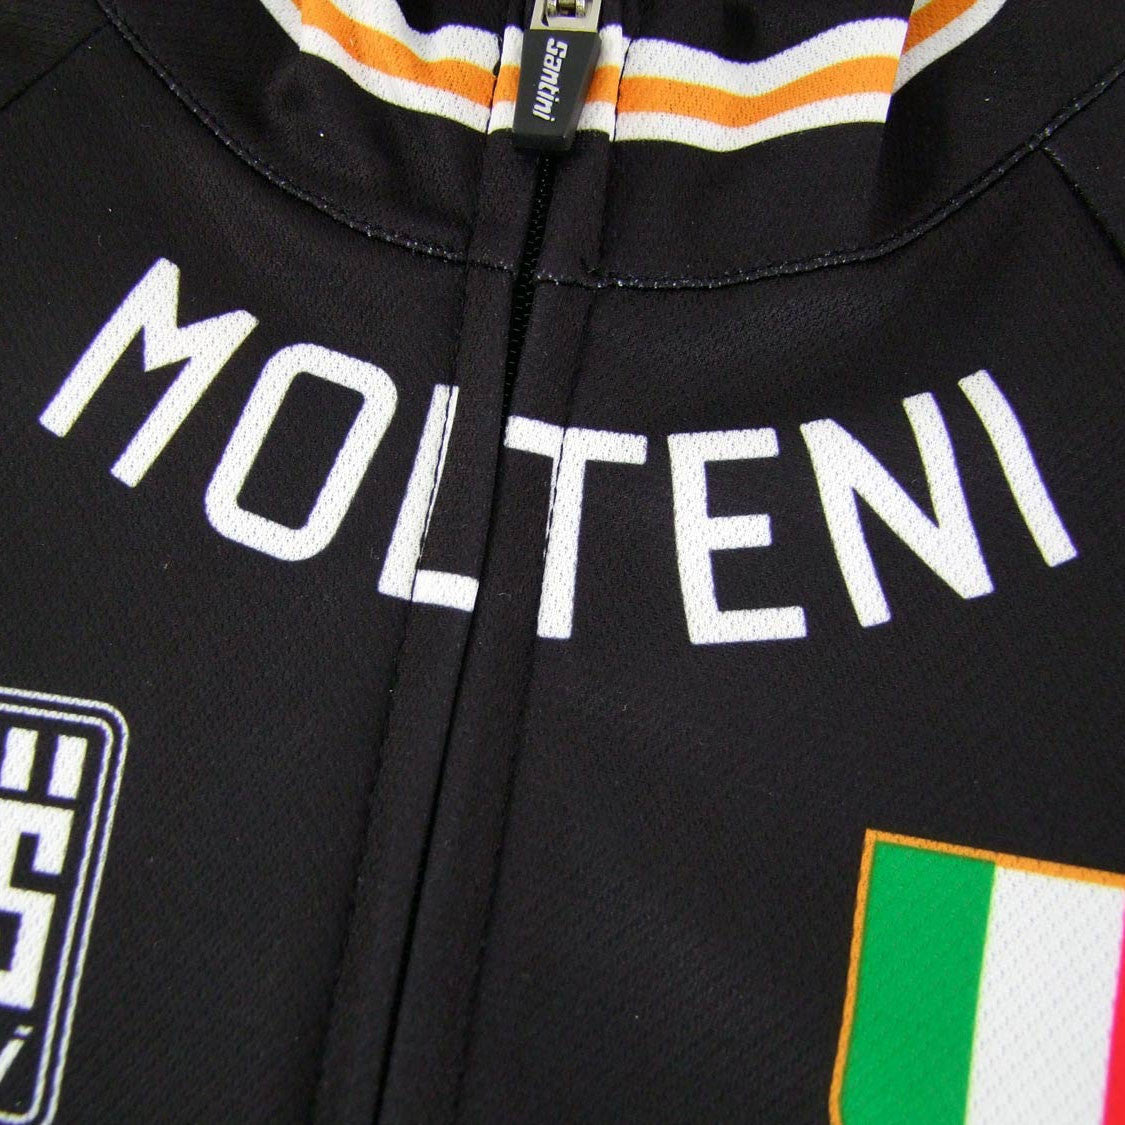 Molteni Arcore Retro Cycling Clothing & Caps